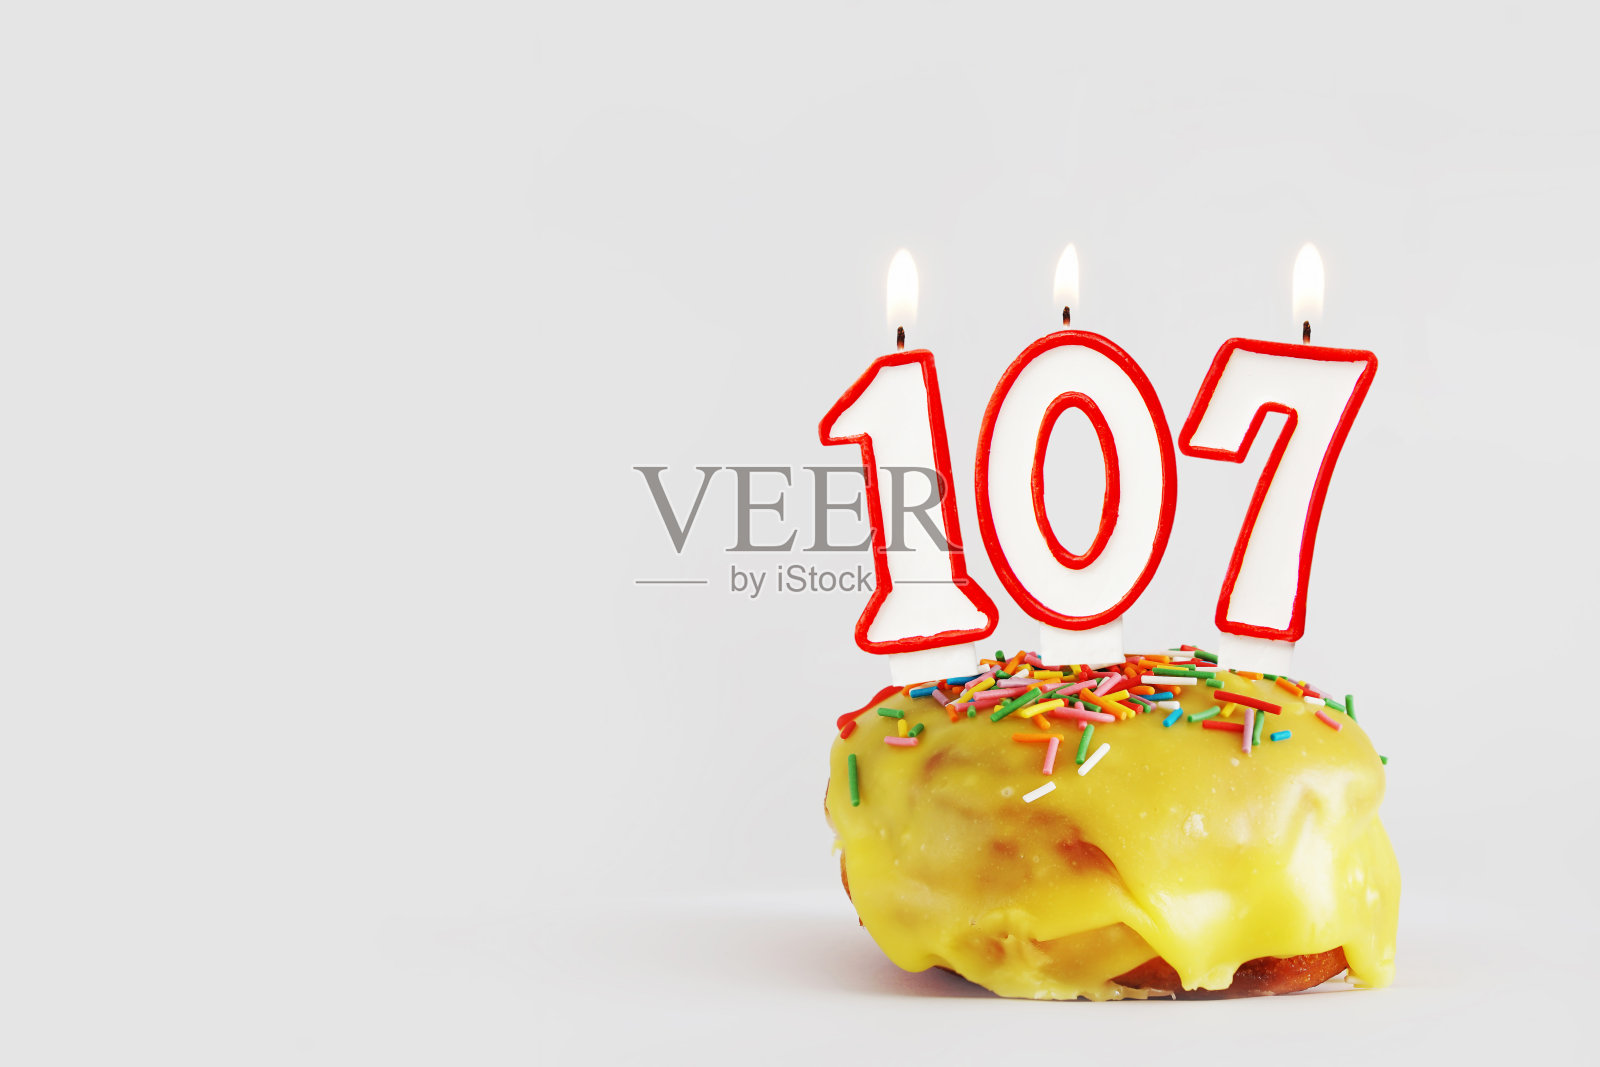 一百零七年的纪念日。生日纸杯蛋糕与白色燃烧的蜡烛与红色边框形式的107数字。浅灰色背景与复制空间照片摄影图片